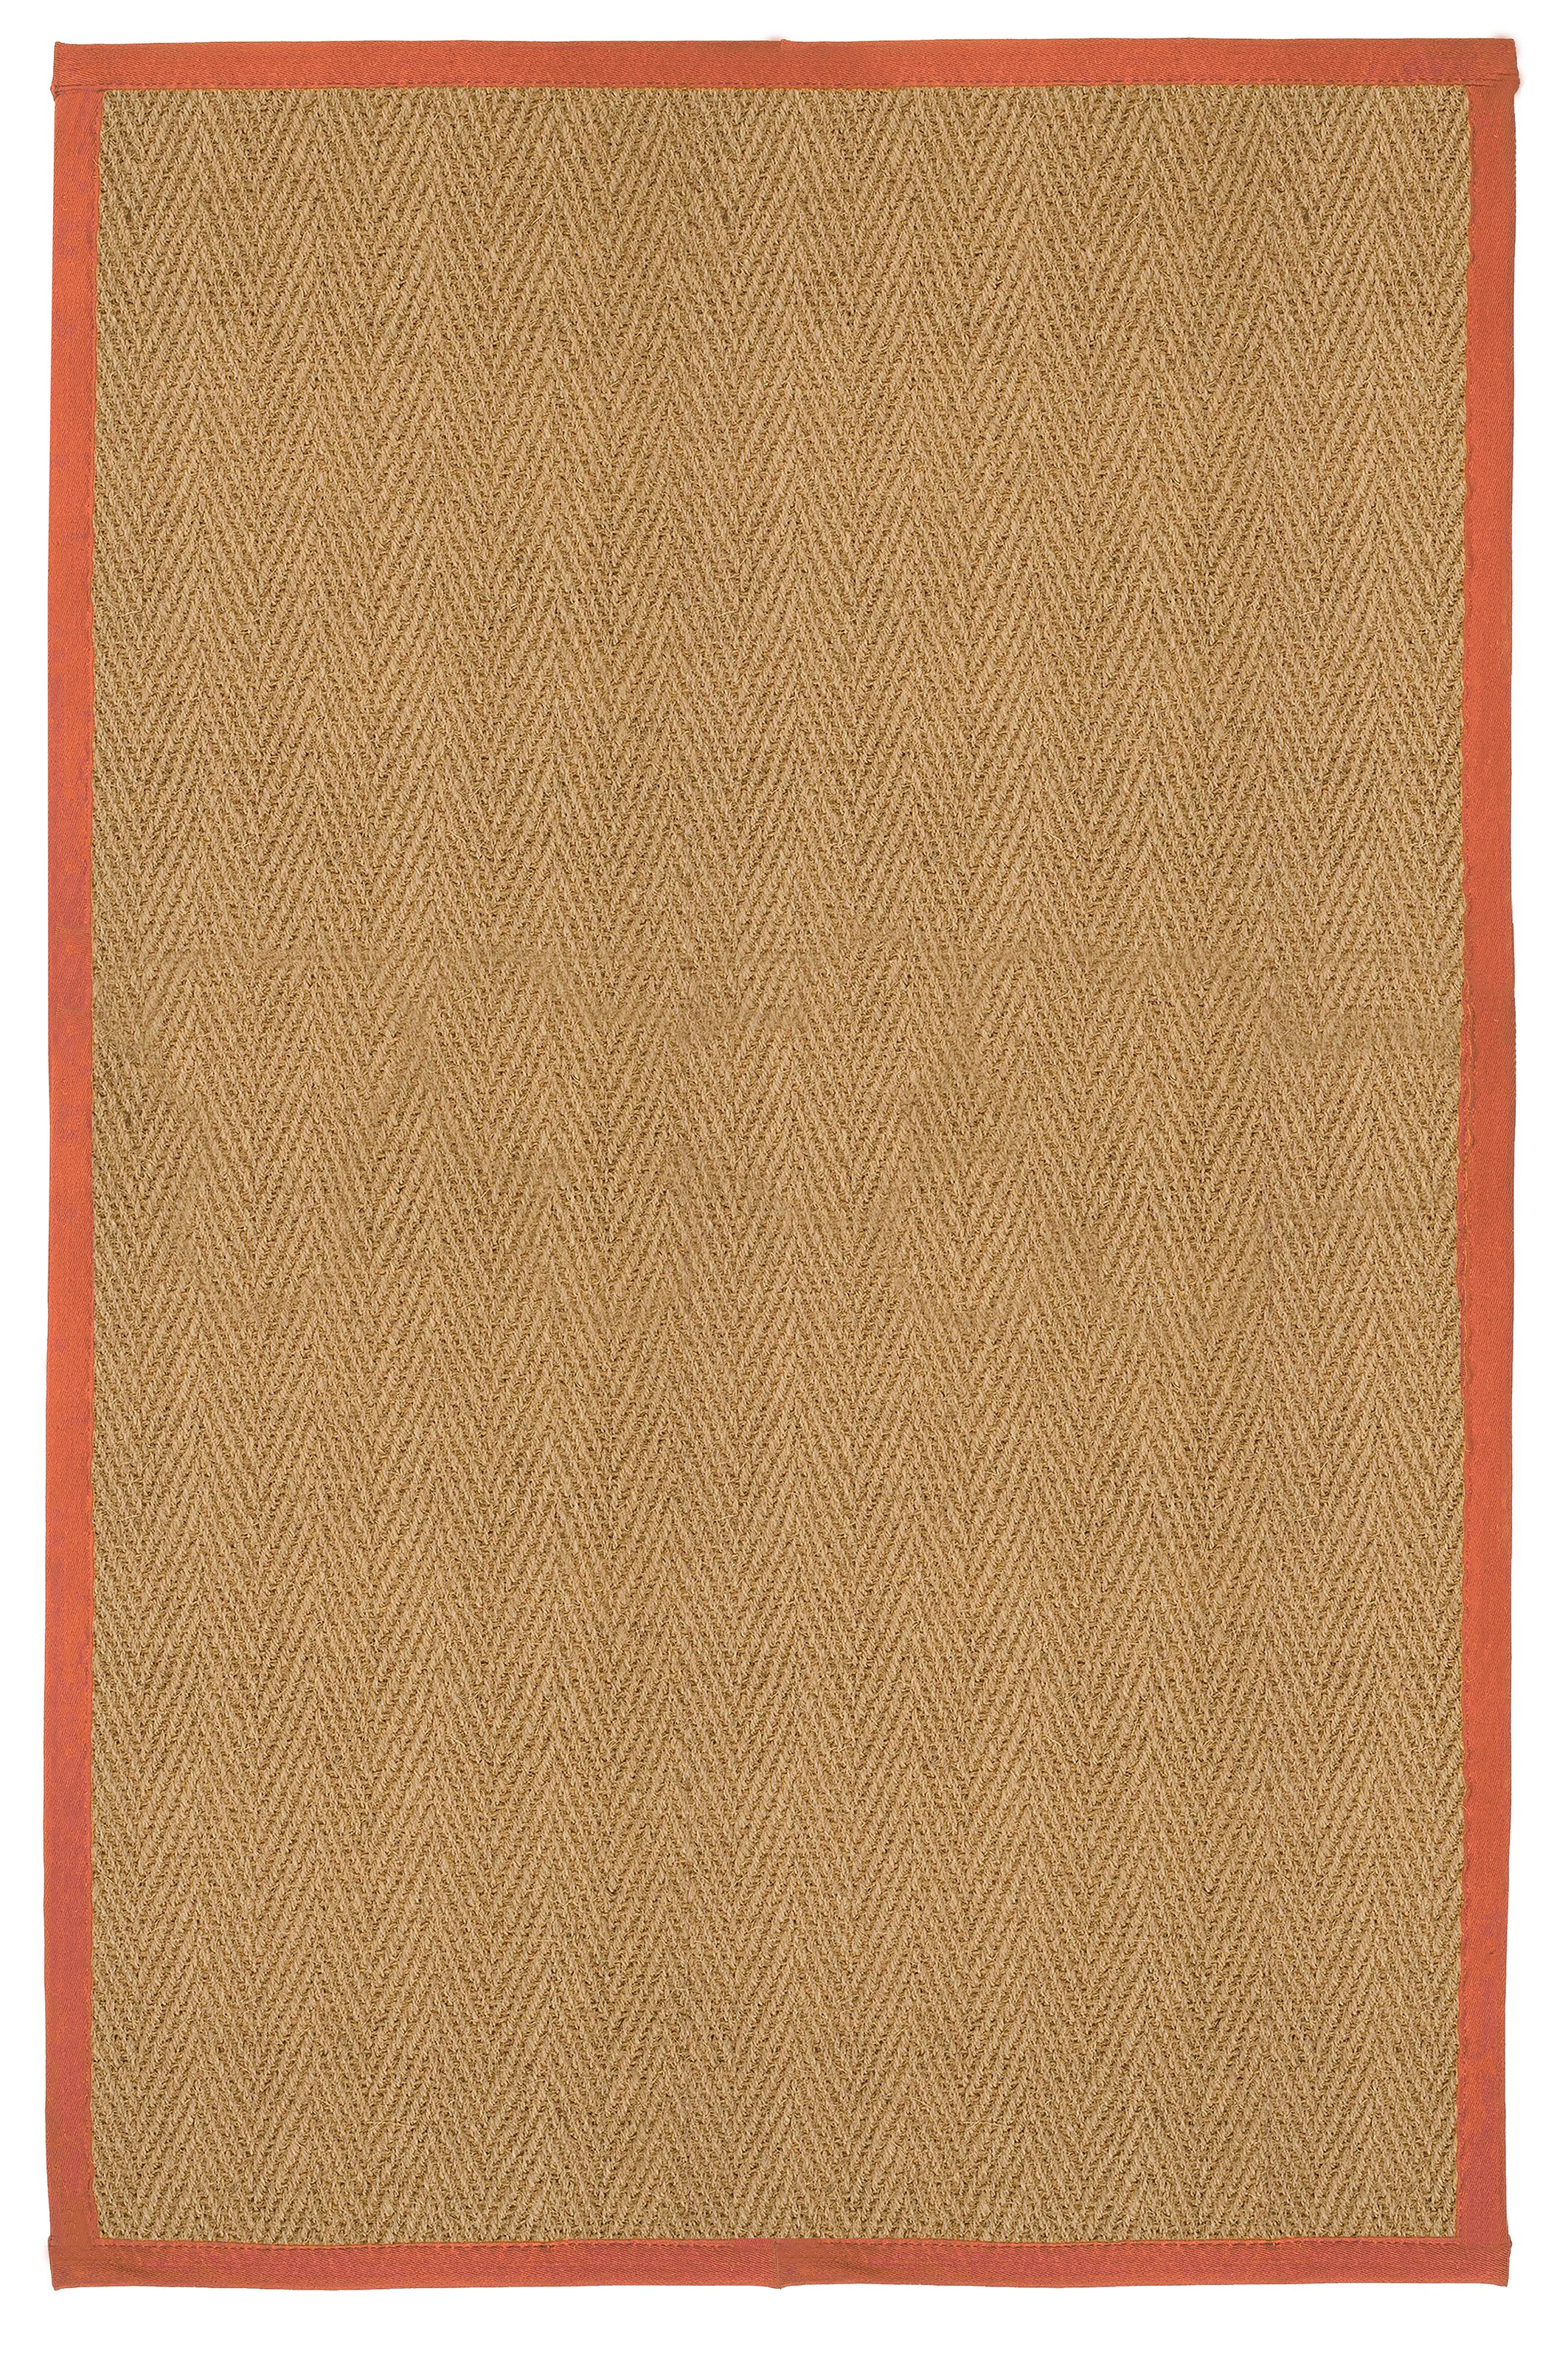 Herringbone weave Brown, orange Rug 150cmx100cm